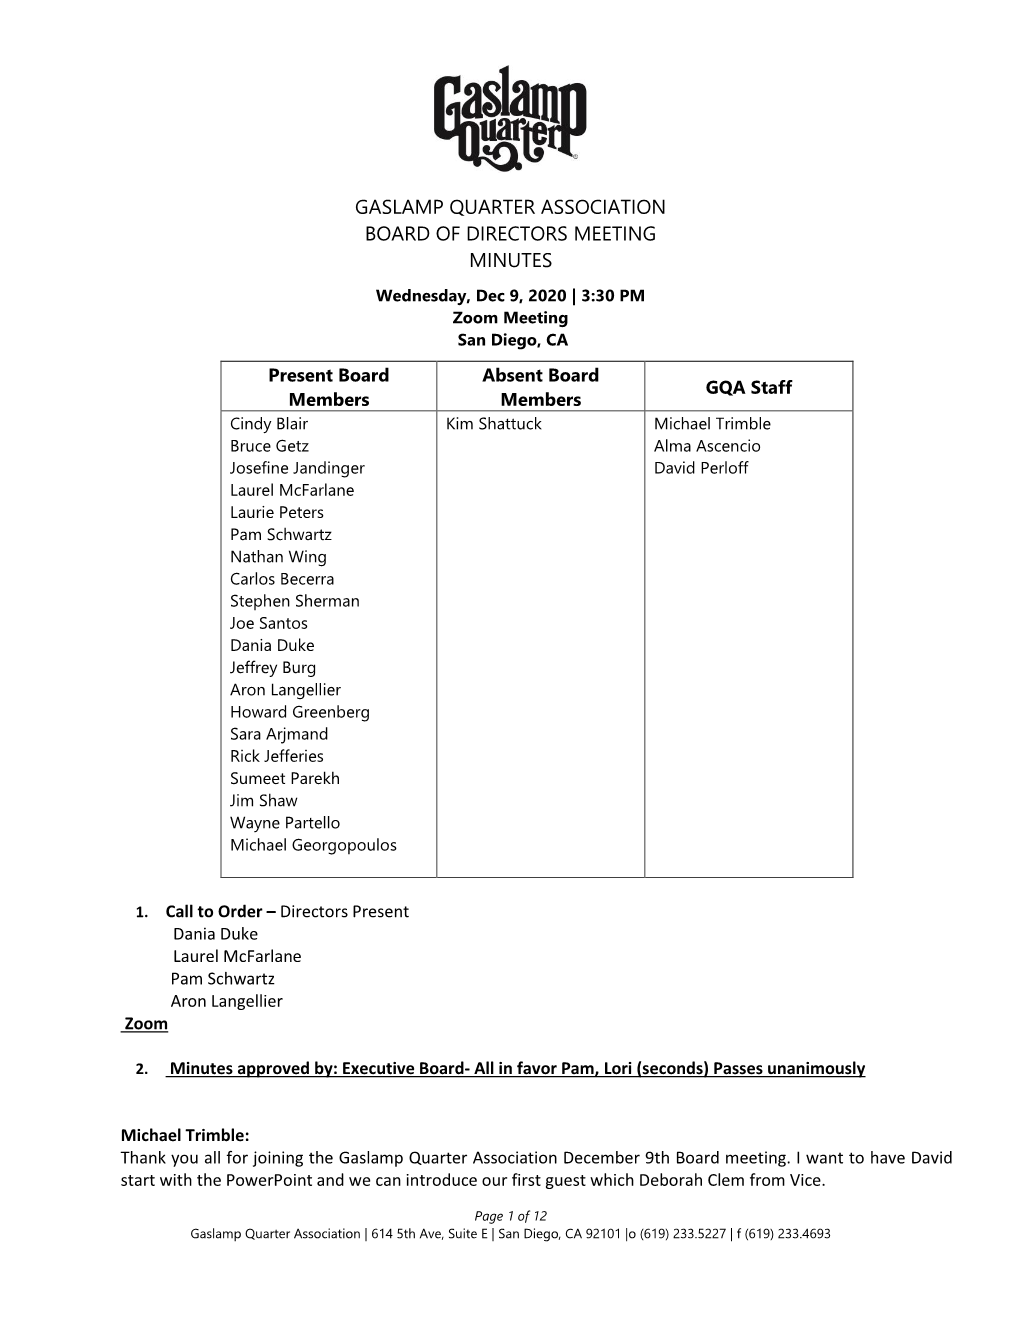 Gaslamp Quarter Association Board of Directors Meeting Minutes